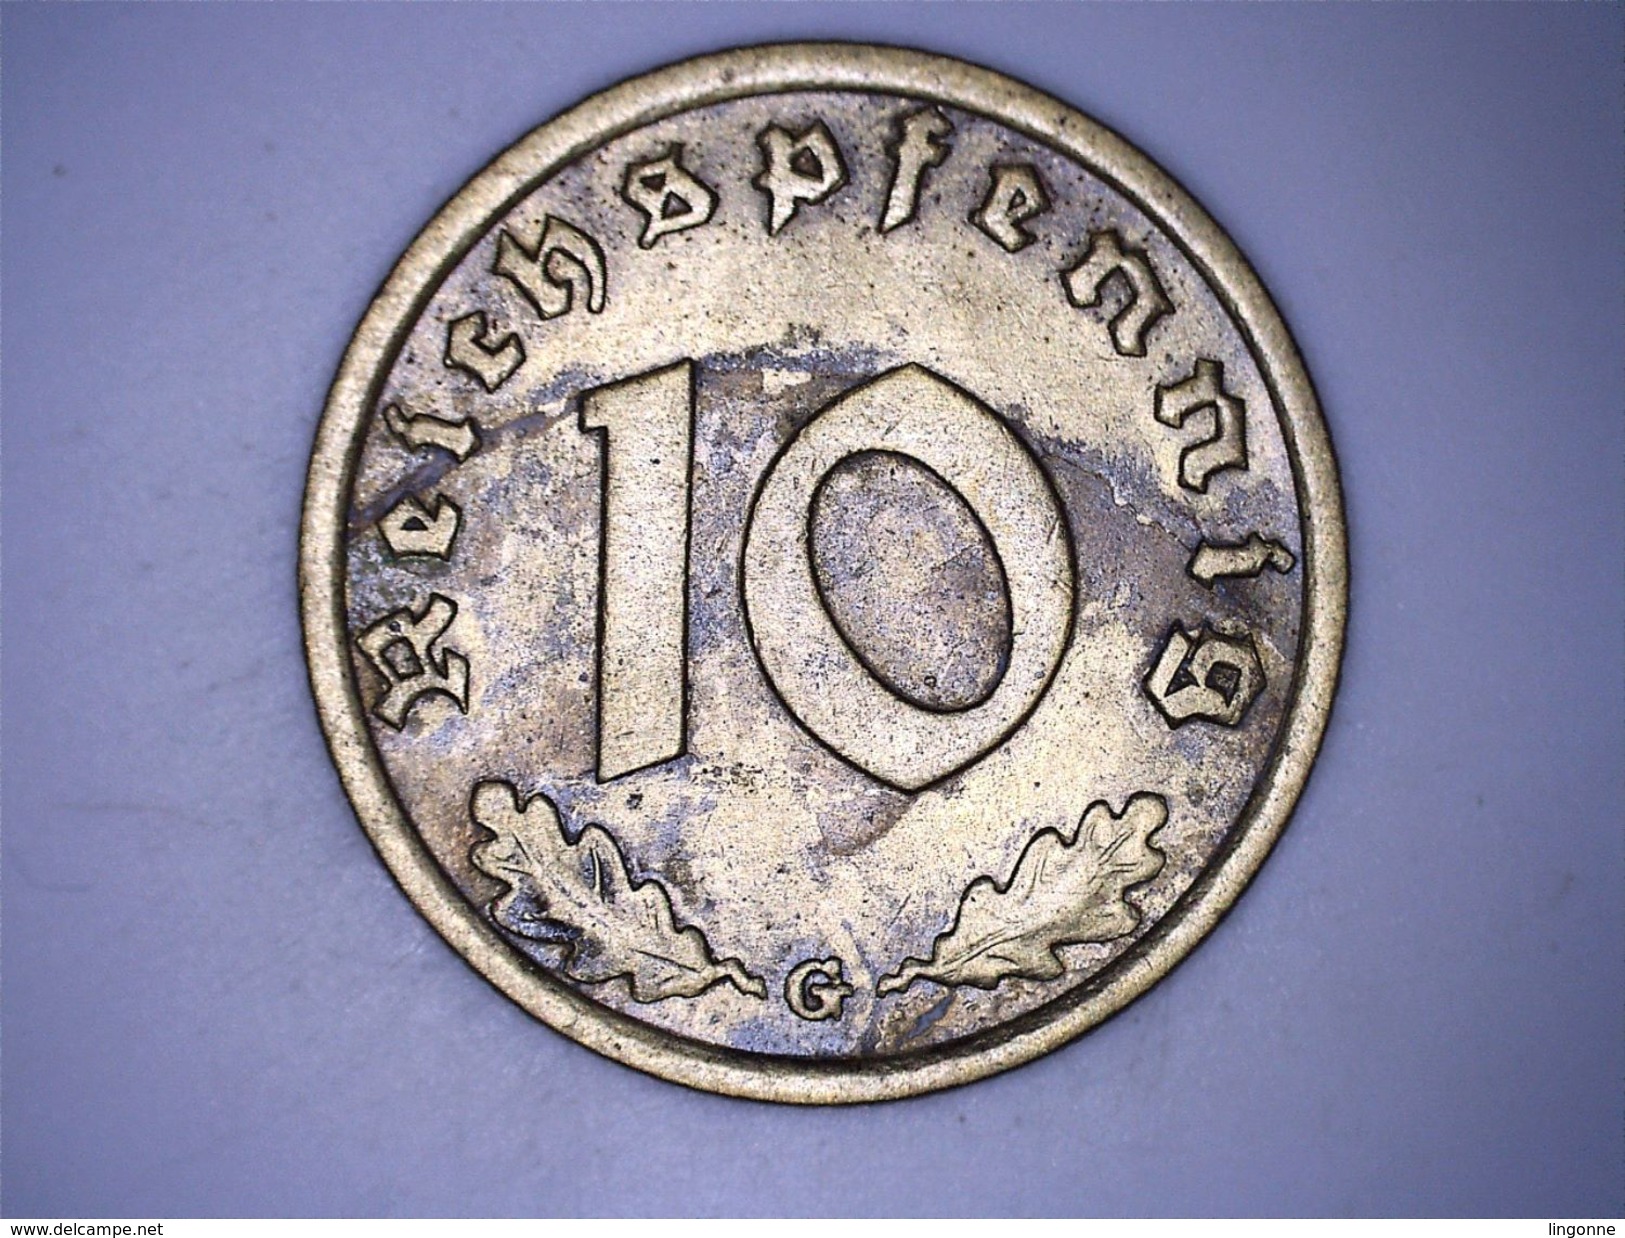 Allemagne - IIIe Reich - 10 Reichspfennig 1938 G - 10 Reichspfennig